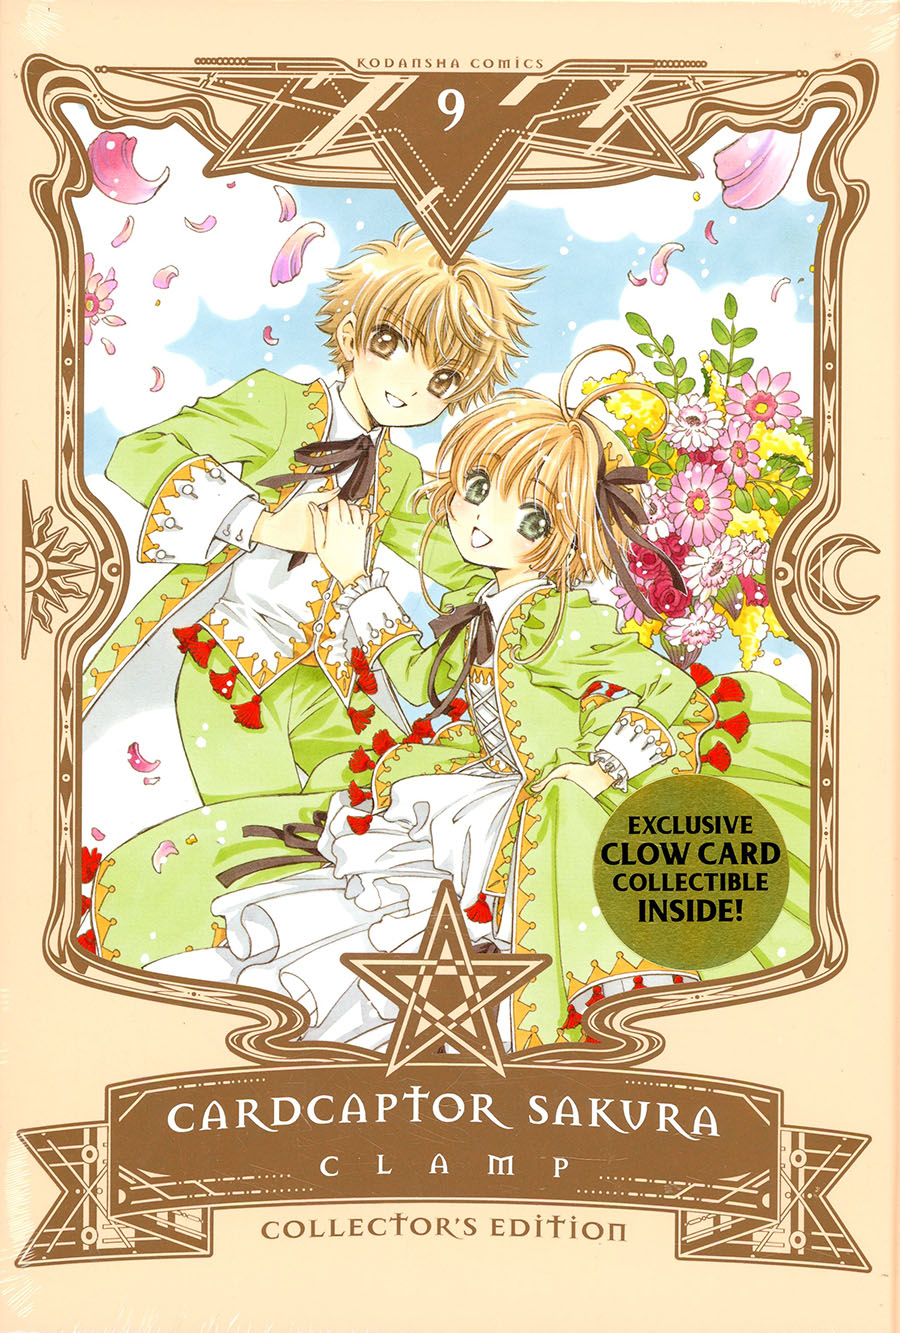 Cardcaptor Sakura Collectors Edition Vol 9 HC